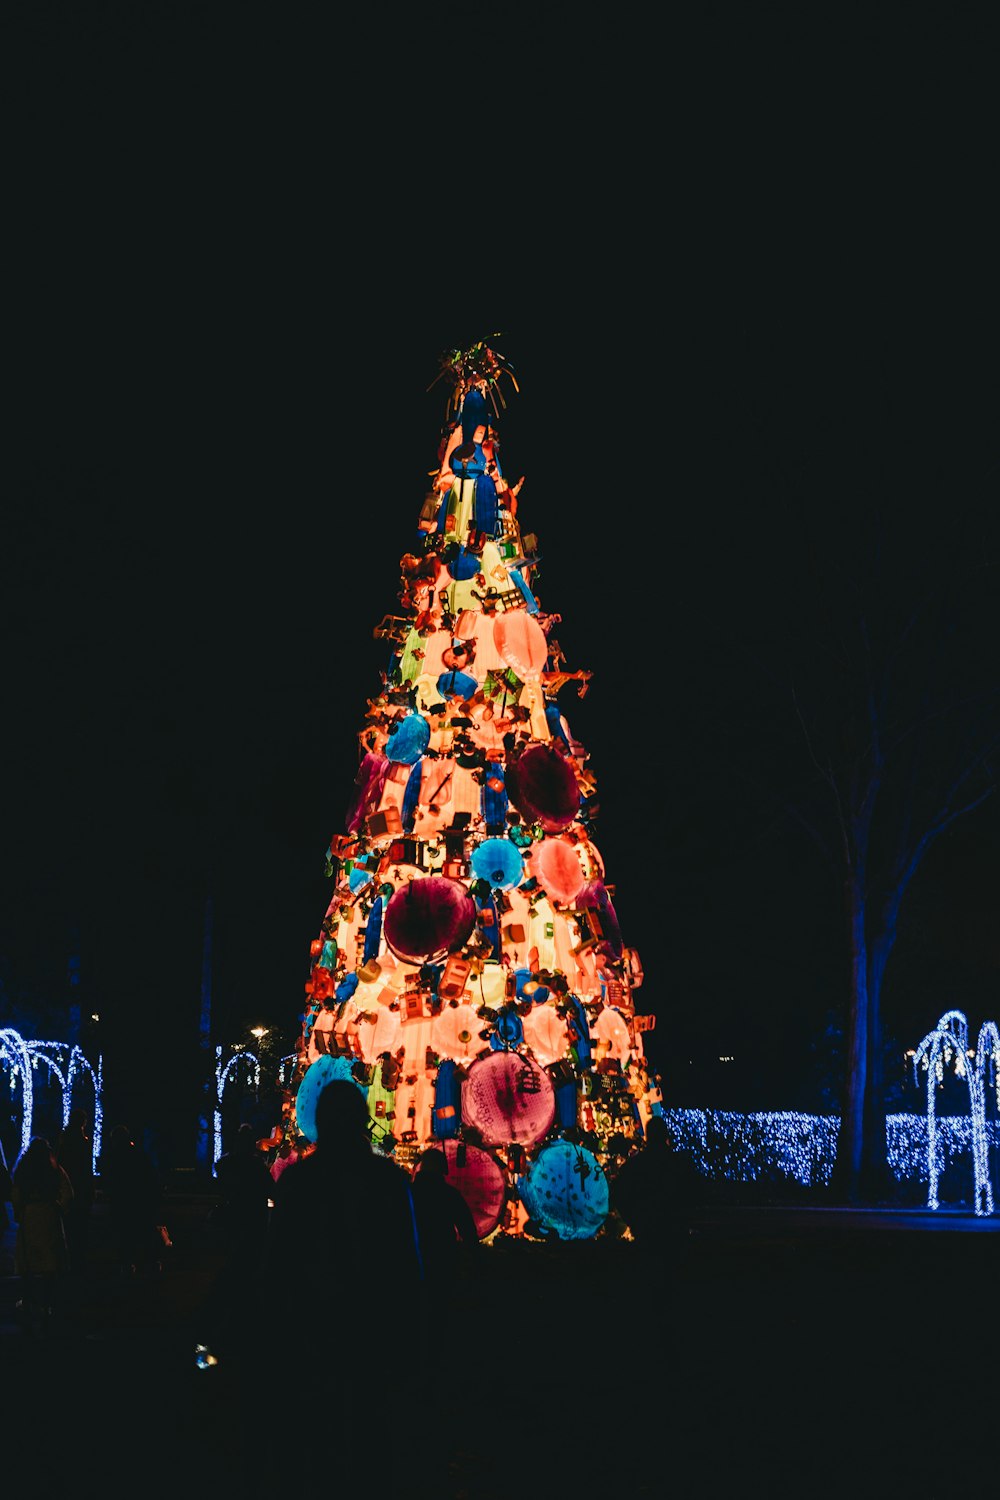 Persone in piedi vicino all'albero di Natale illuminato durante la notte